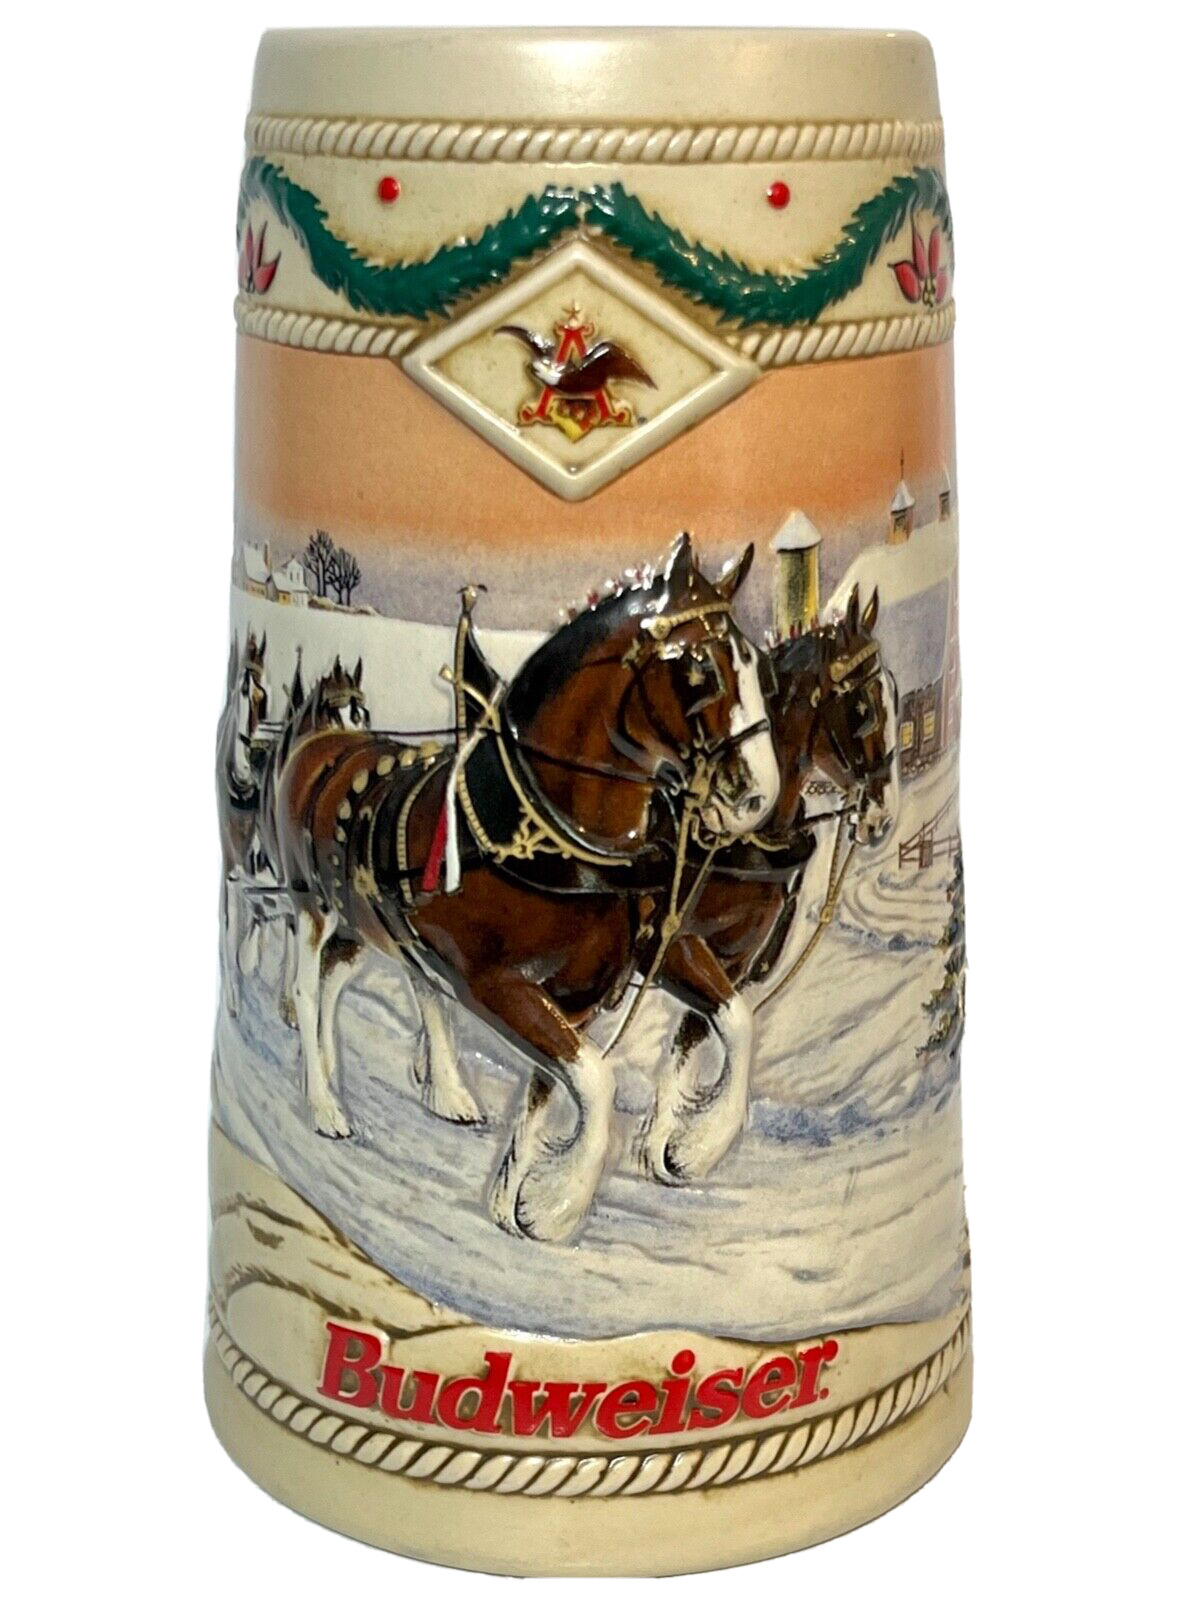 1996 Budweiser Holiday Beer Stein AMERICAN HOMESTEAD Ceramarte